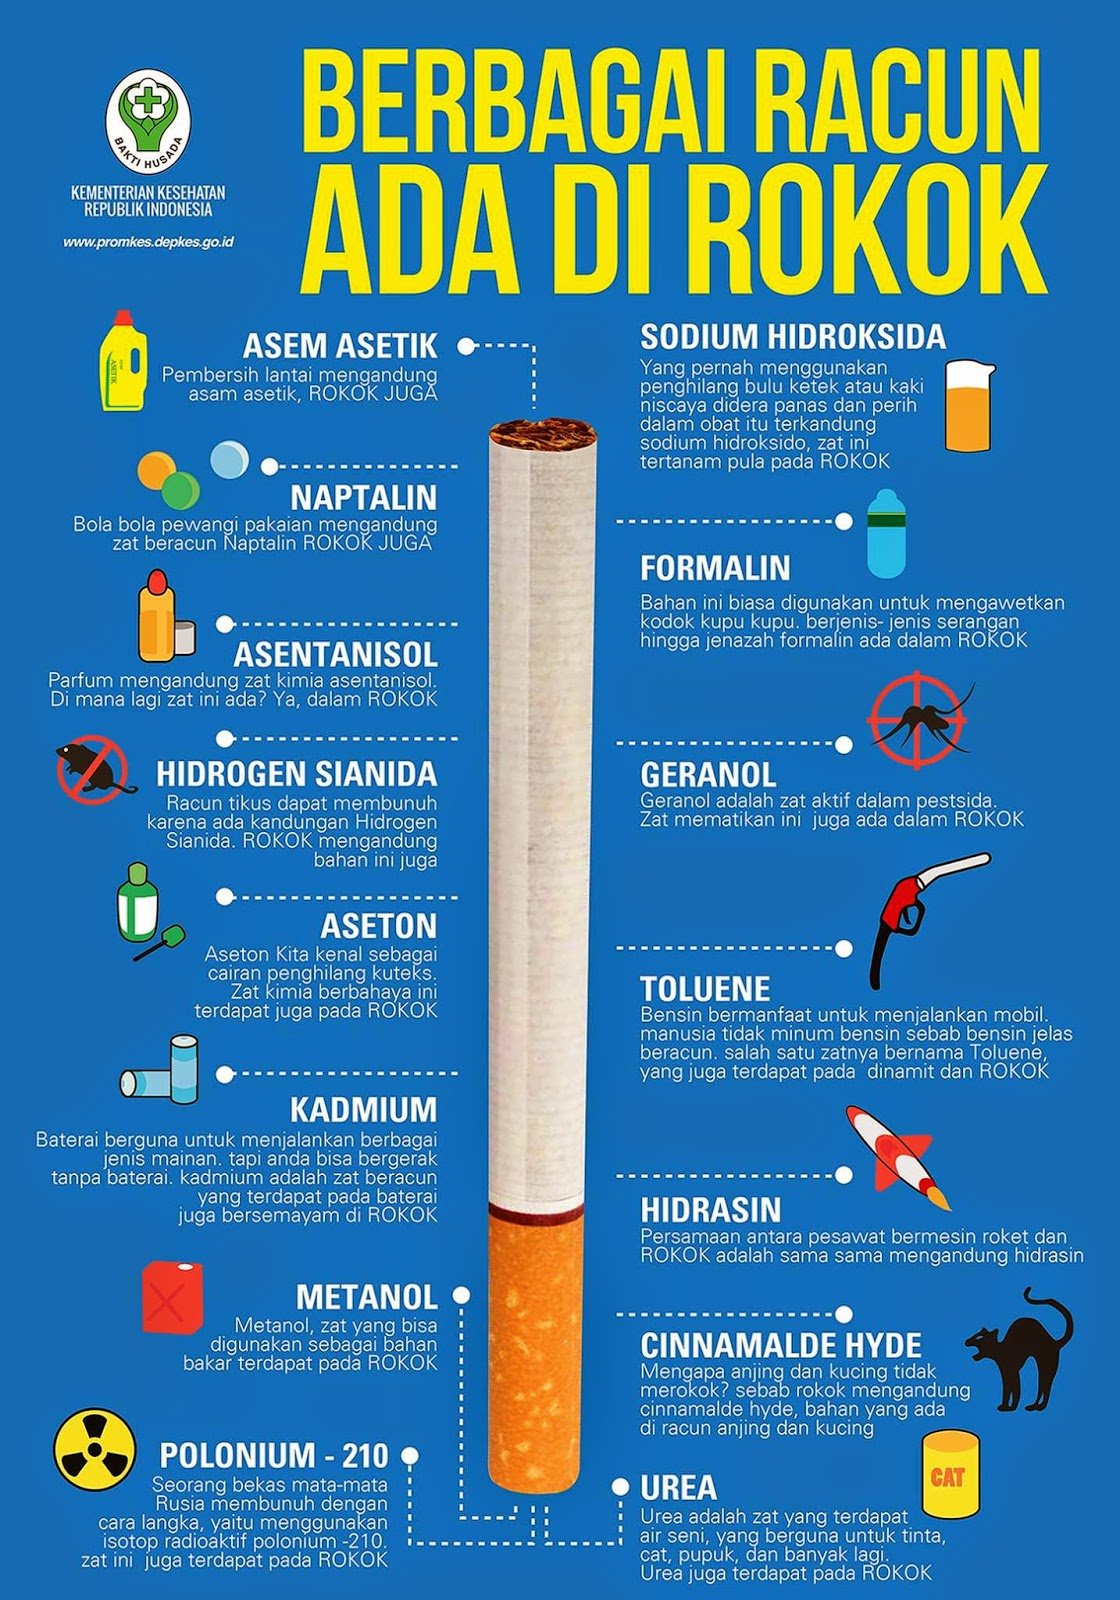 5 Tips Yang Berkesan Khas Buat Perokok Untuk Berhenti Merokok – Daily